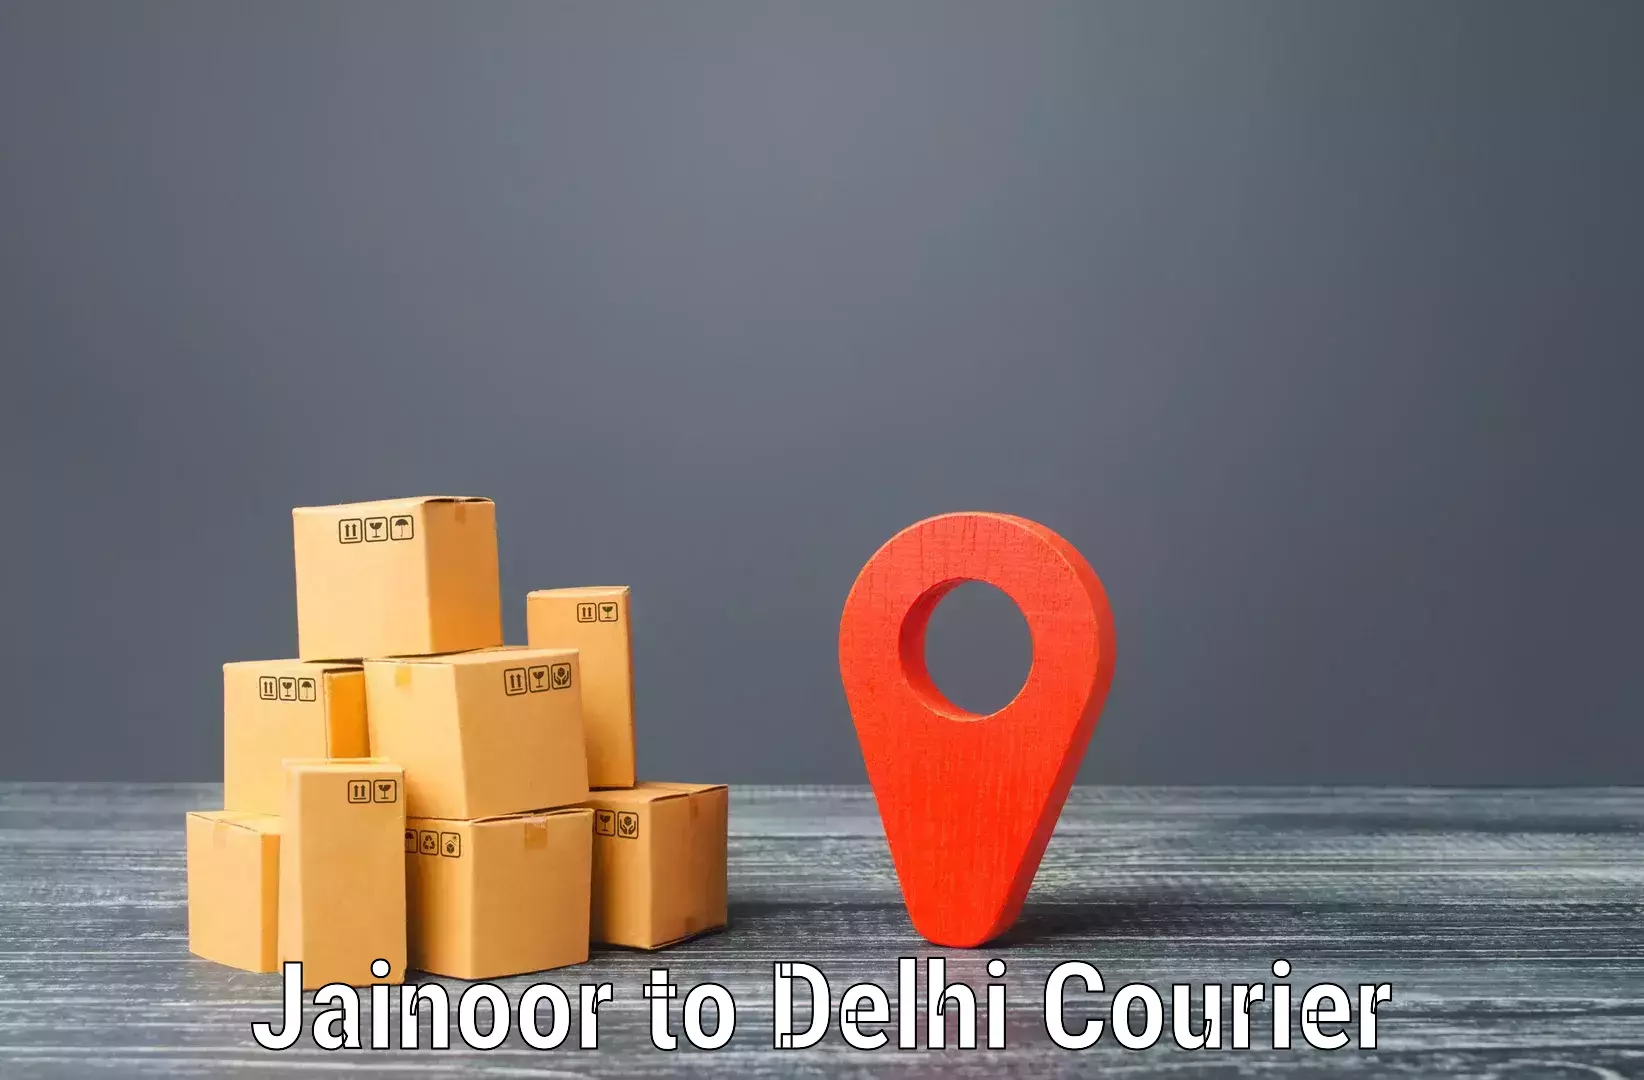 Express postal services Jainoor to IIT Delhi